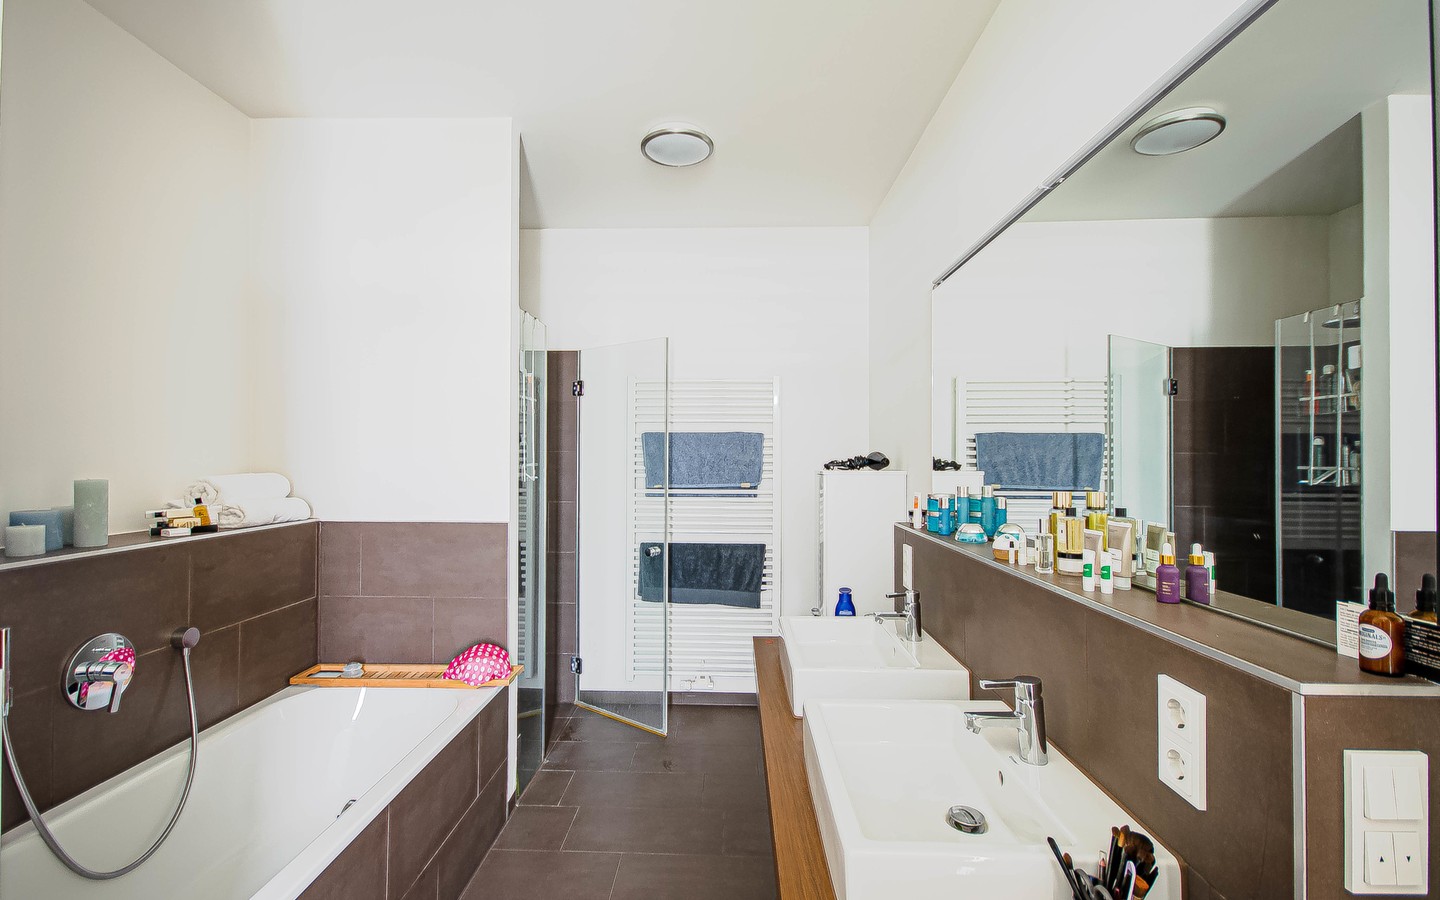 Badezimmer - Ein Hauch von Luxus:
Imposante Penthouse Wohnung mit vielen Extras